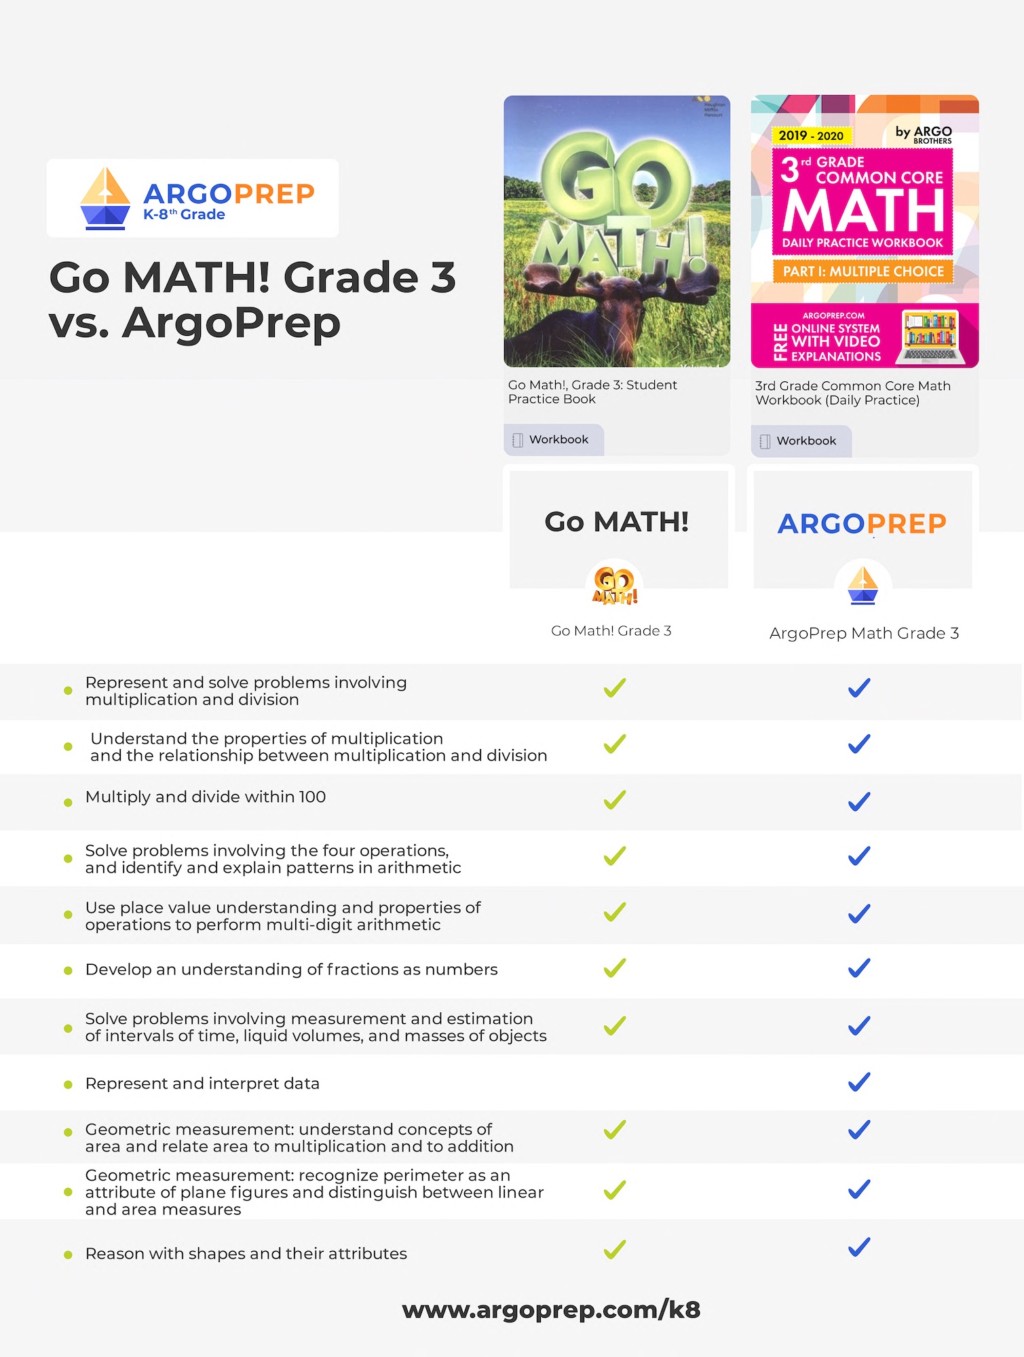 Go Math vs ArgoPrep